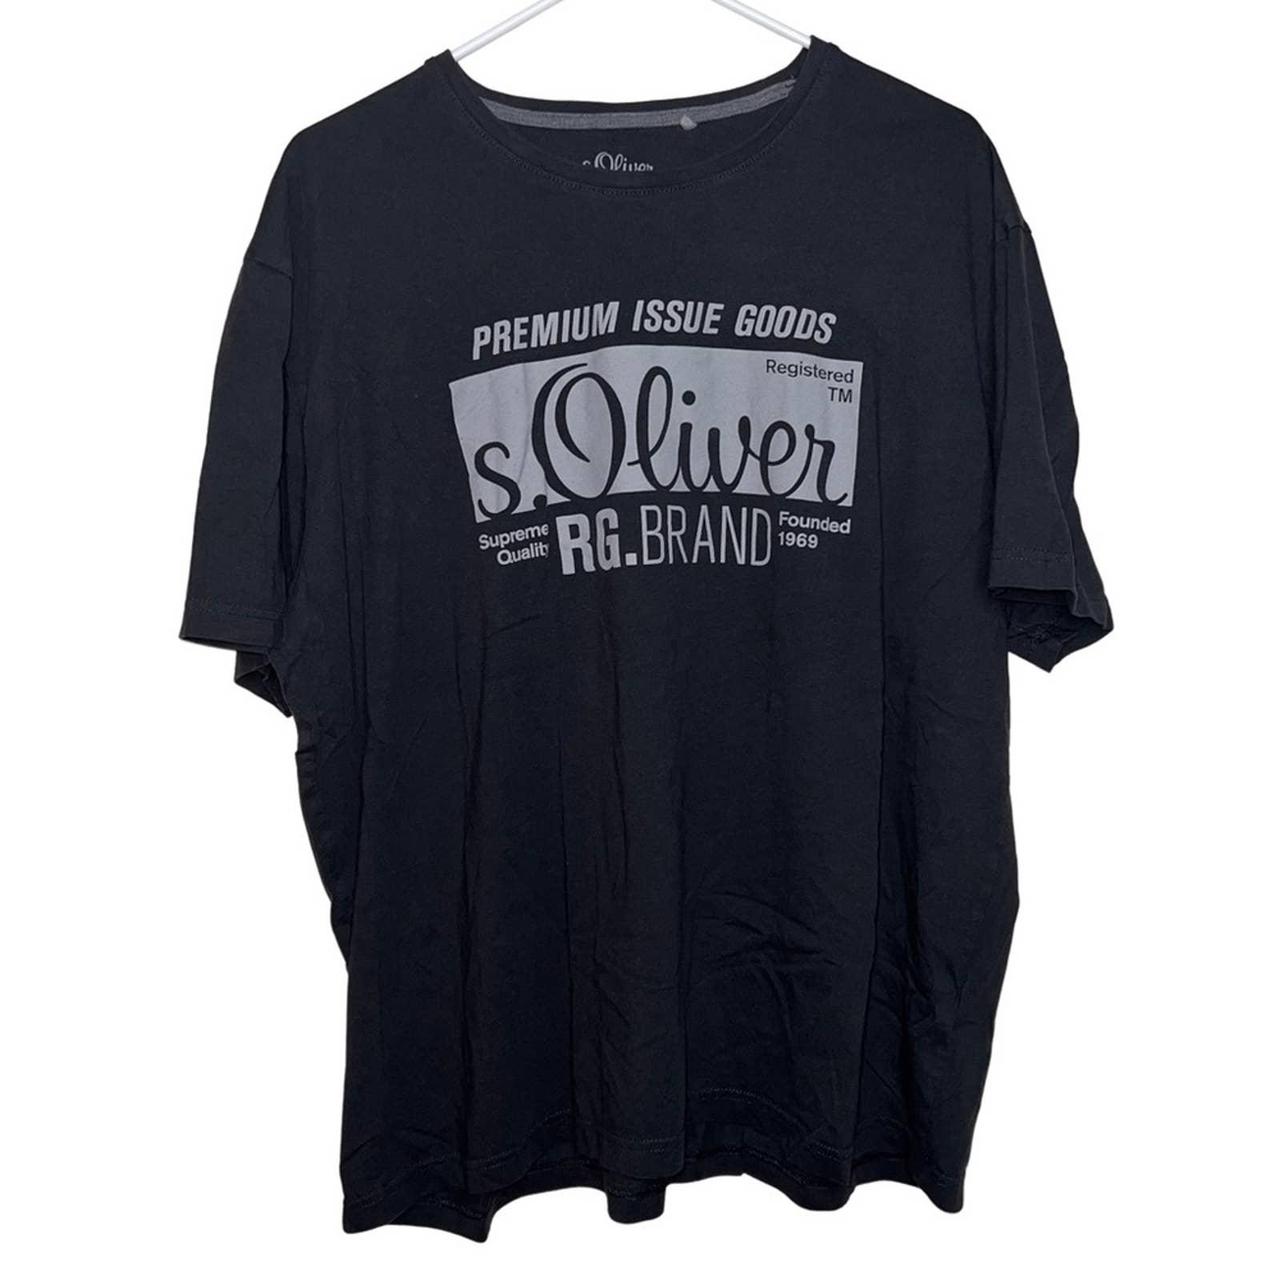 s.Oliver men's gray cotton T-shirt size XXXL... - Depop